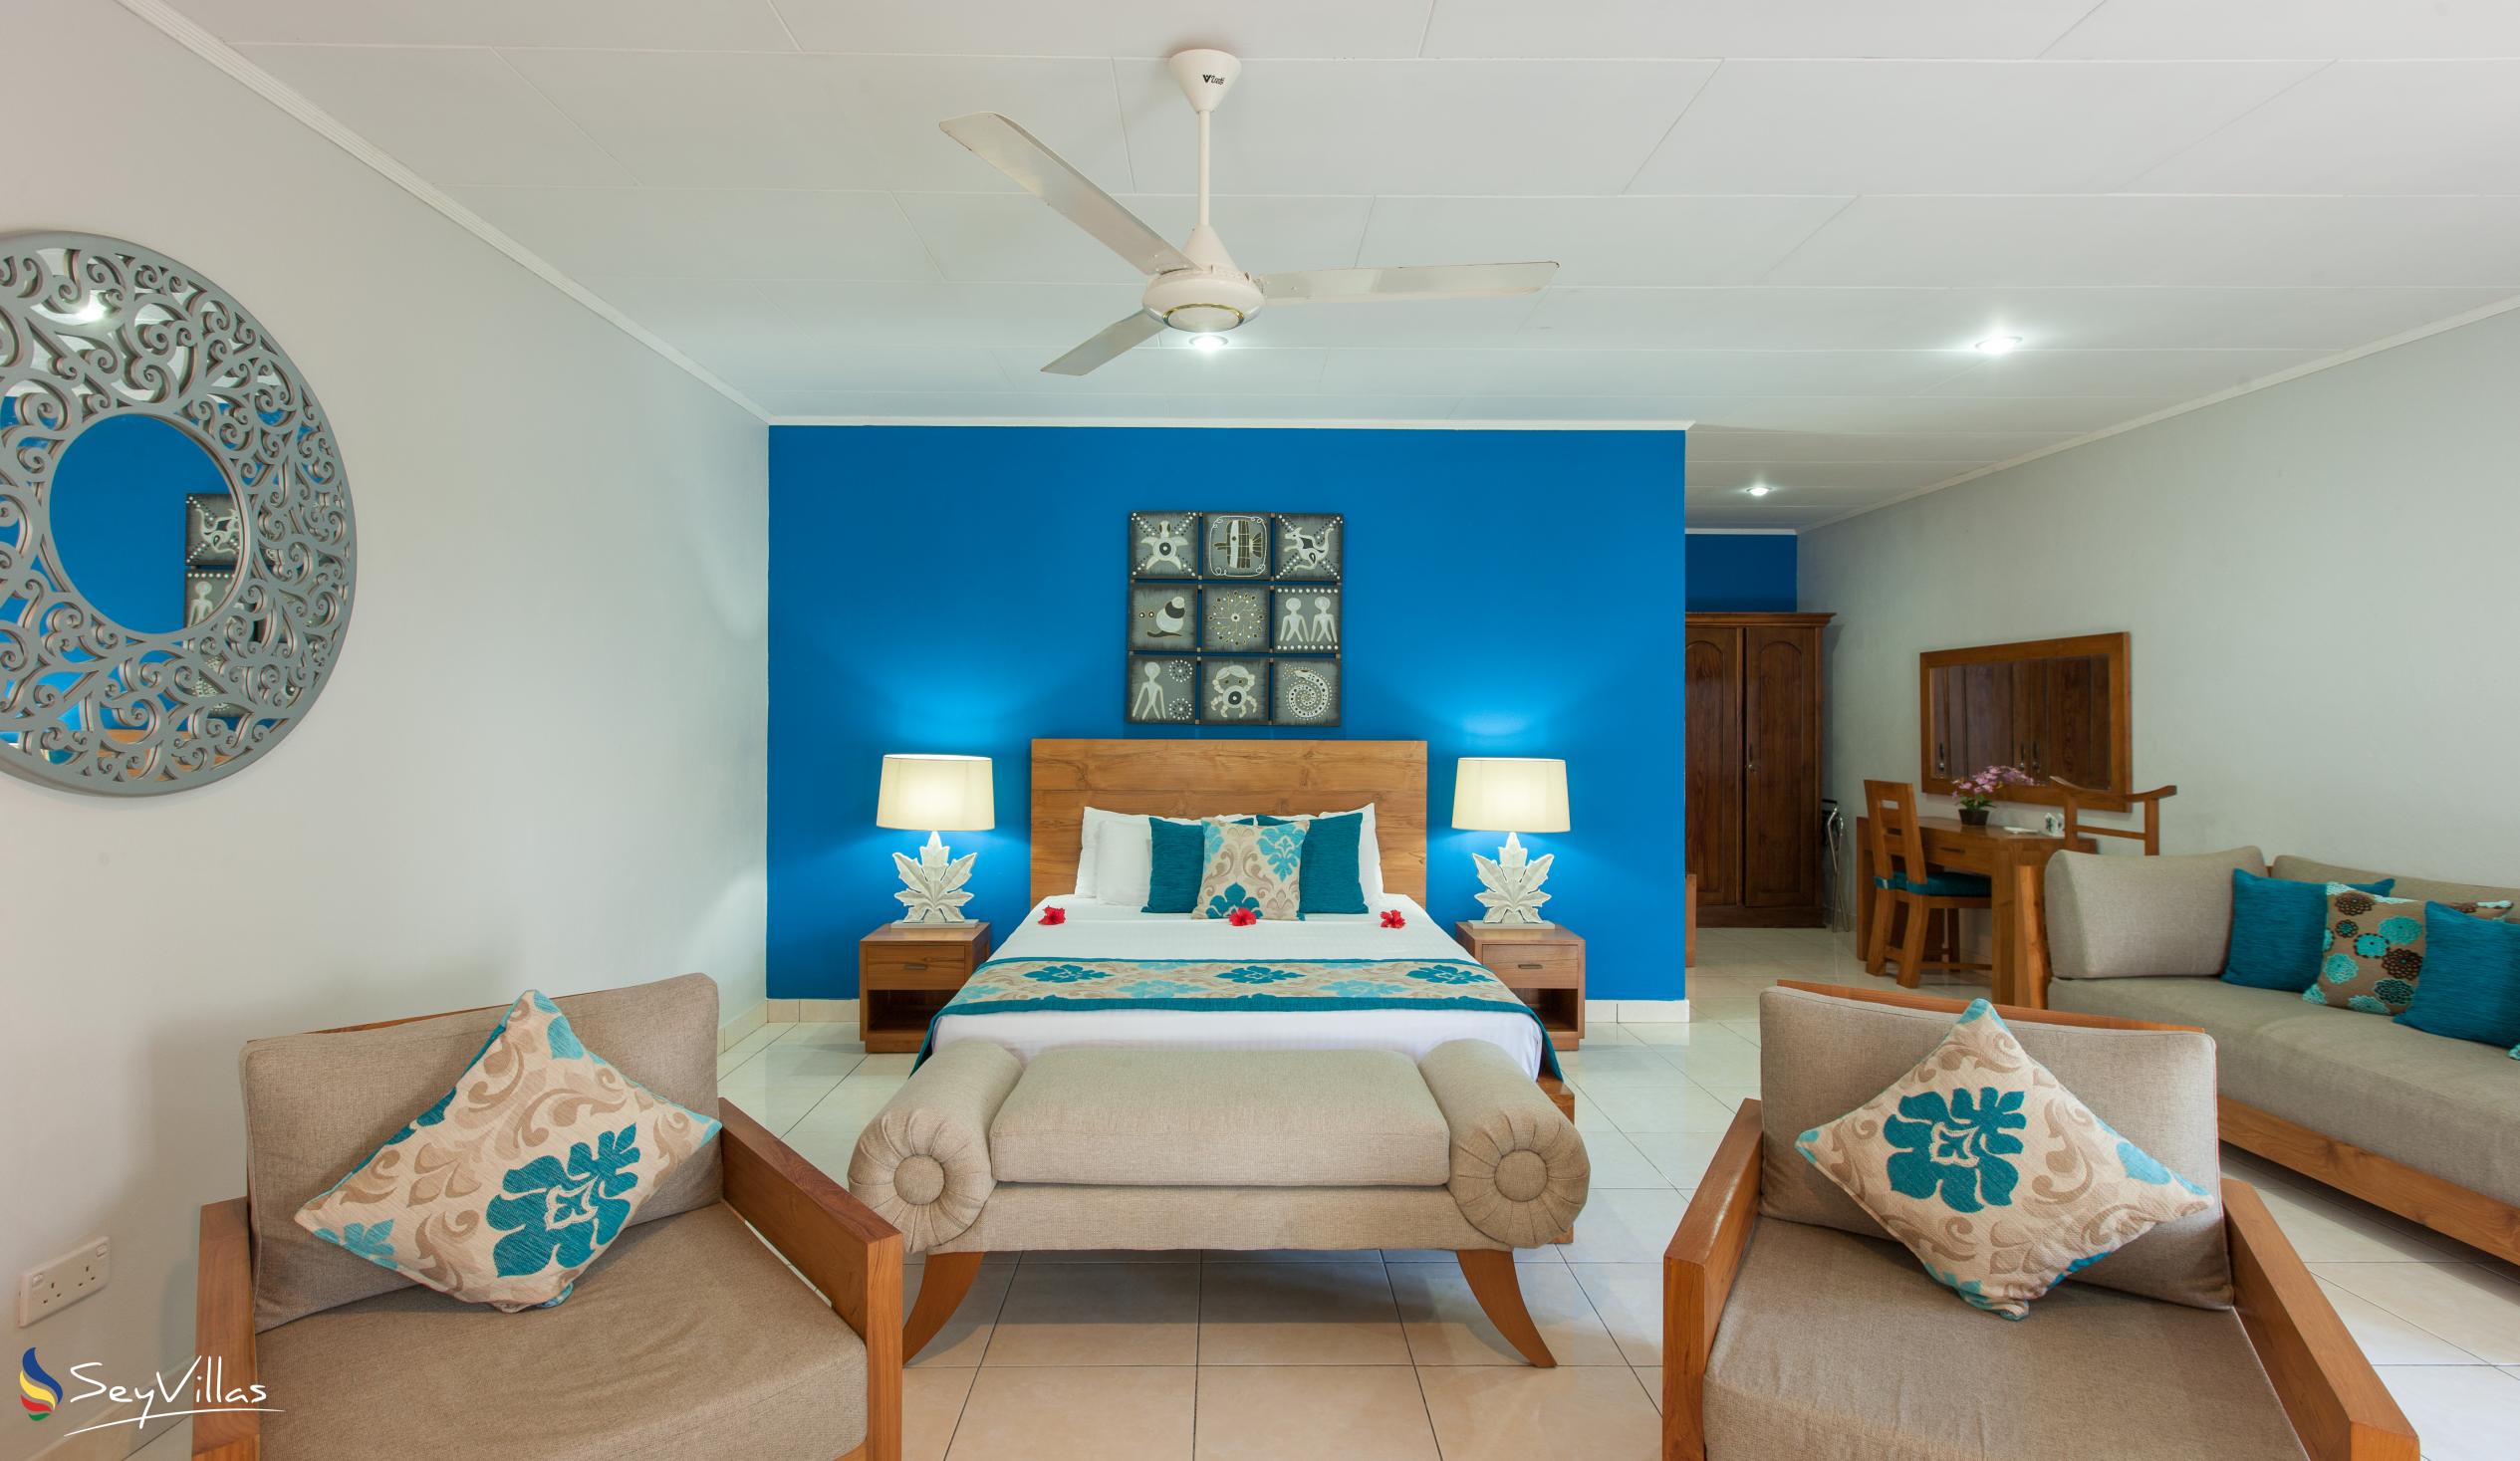 Photo 41: Villas de Mer - Junior Suite - Praslin (Seychelles)